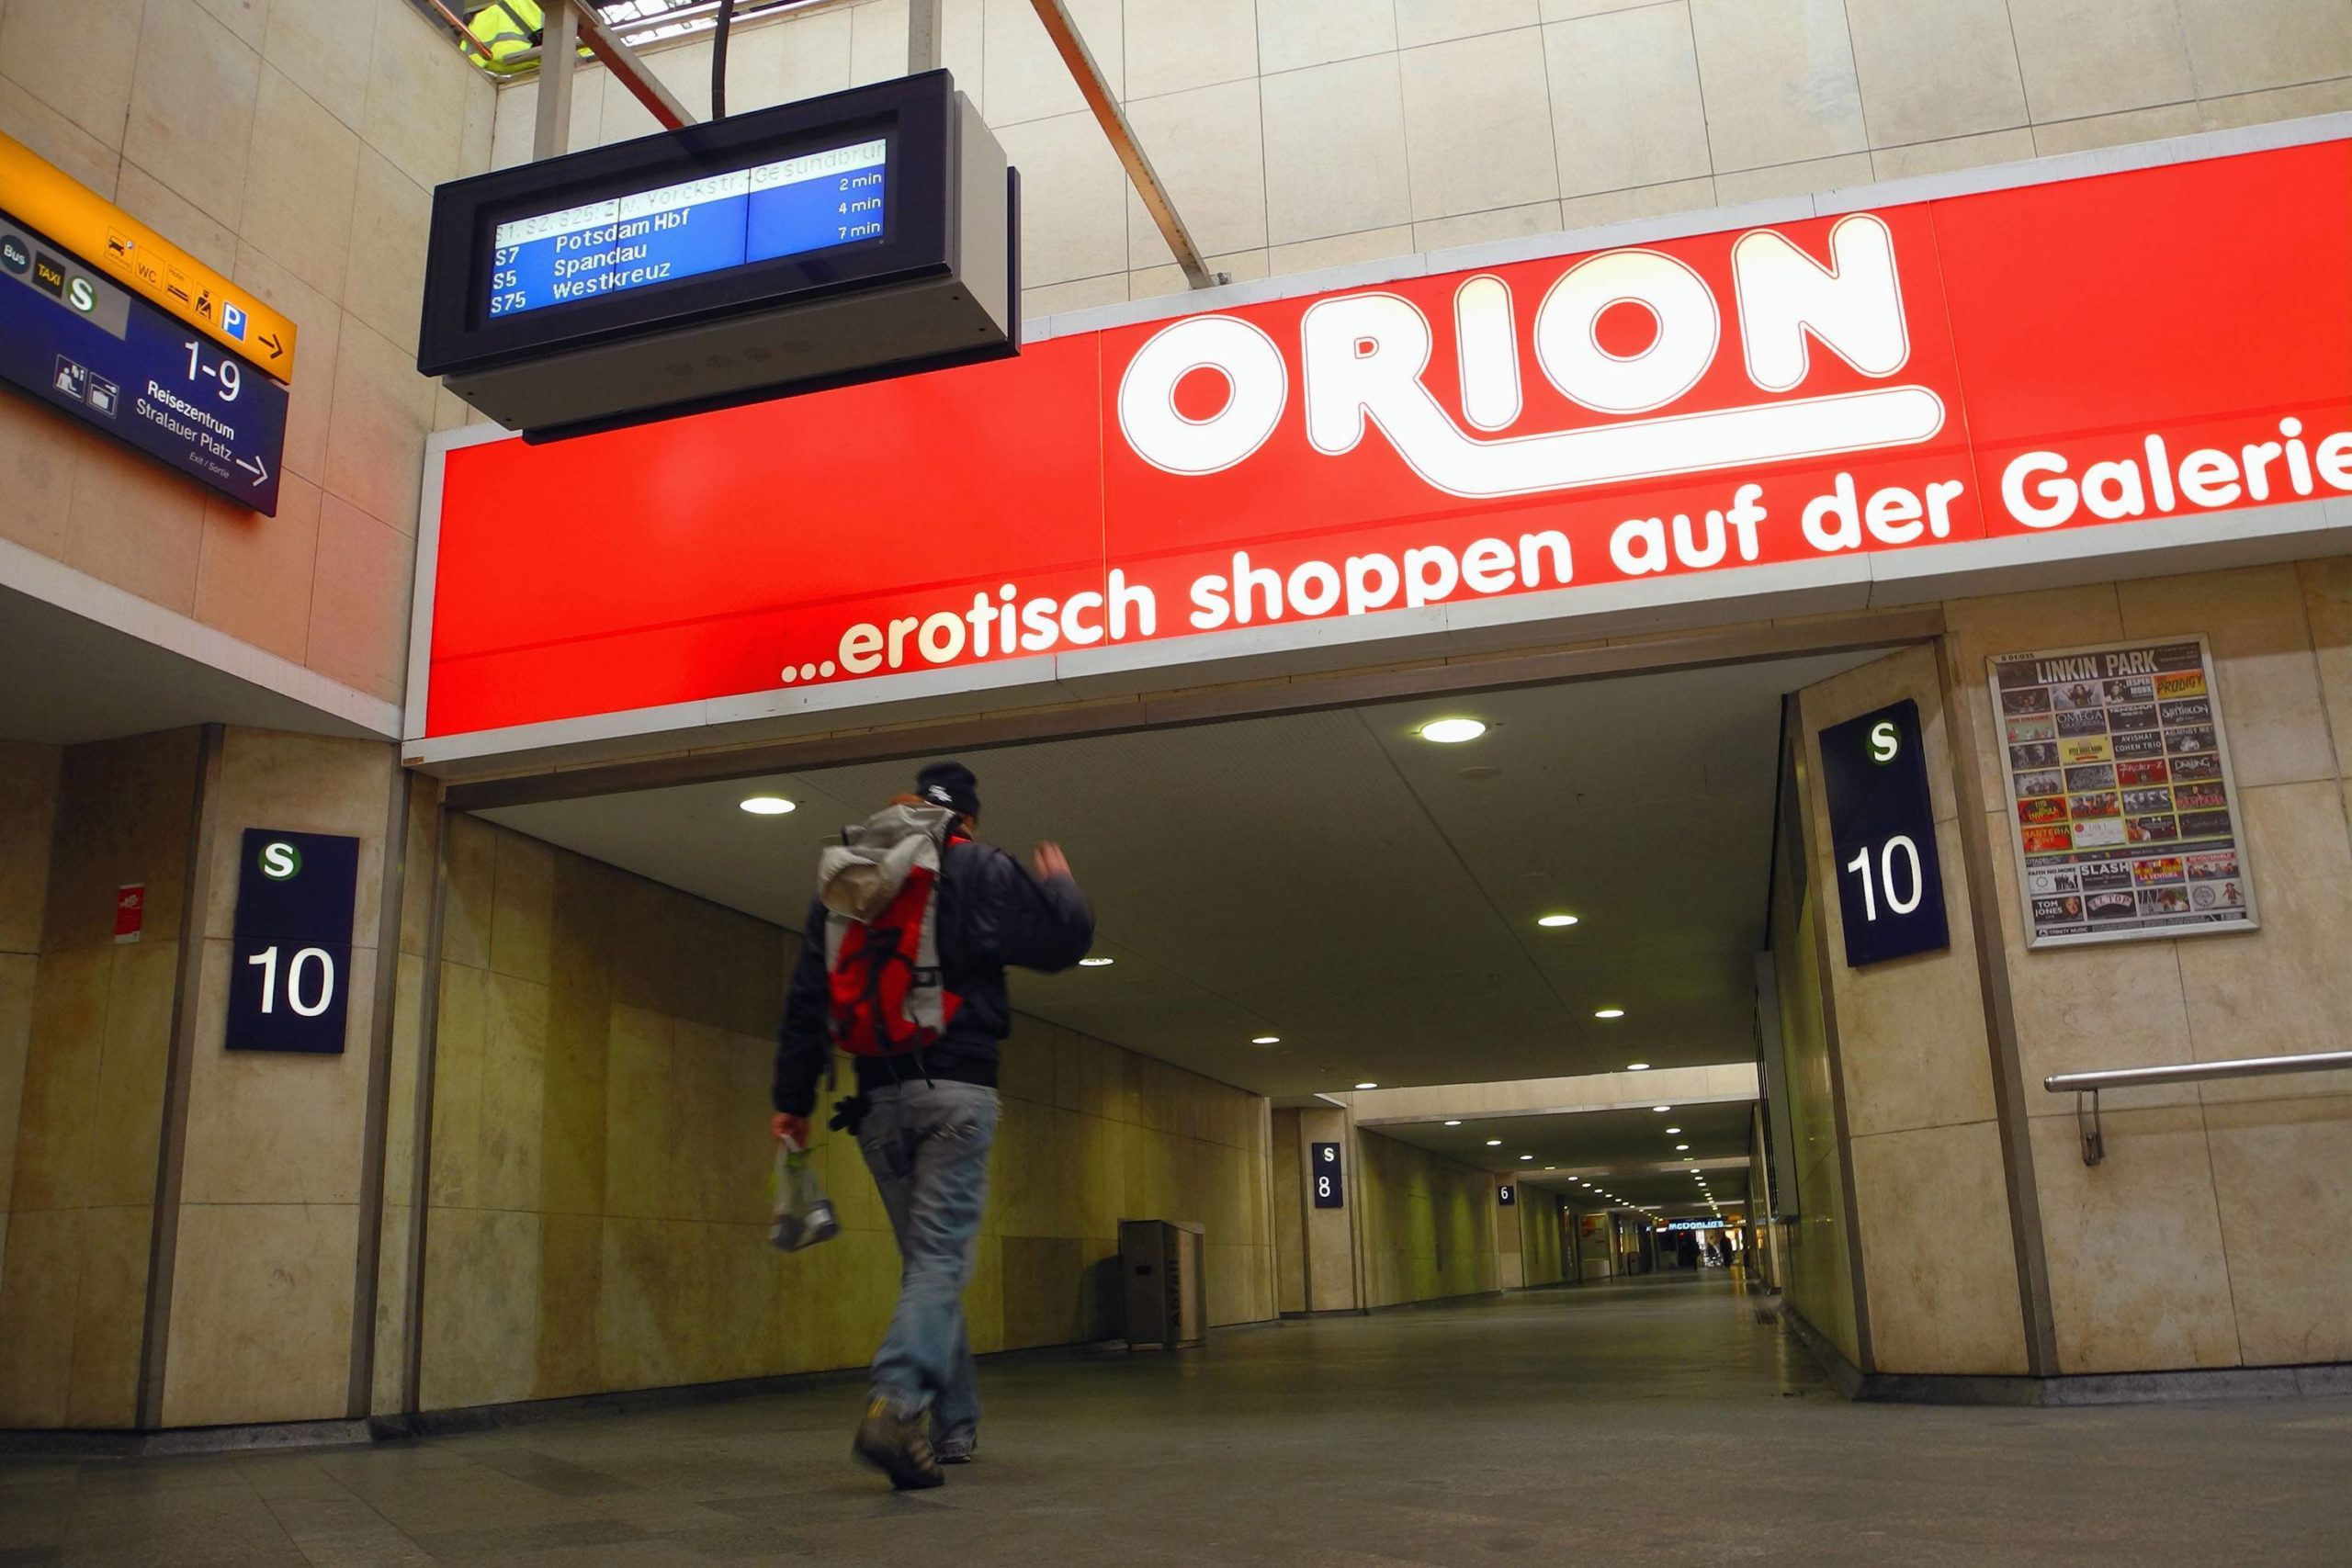 Der Ostbahnhof mit Werbung für den Erotik-Shop Orion, 2015. Foto: Imago/PEMAX